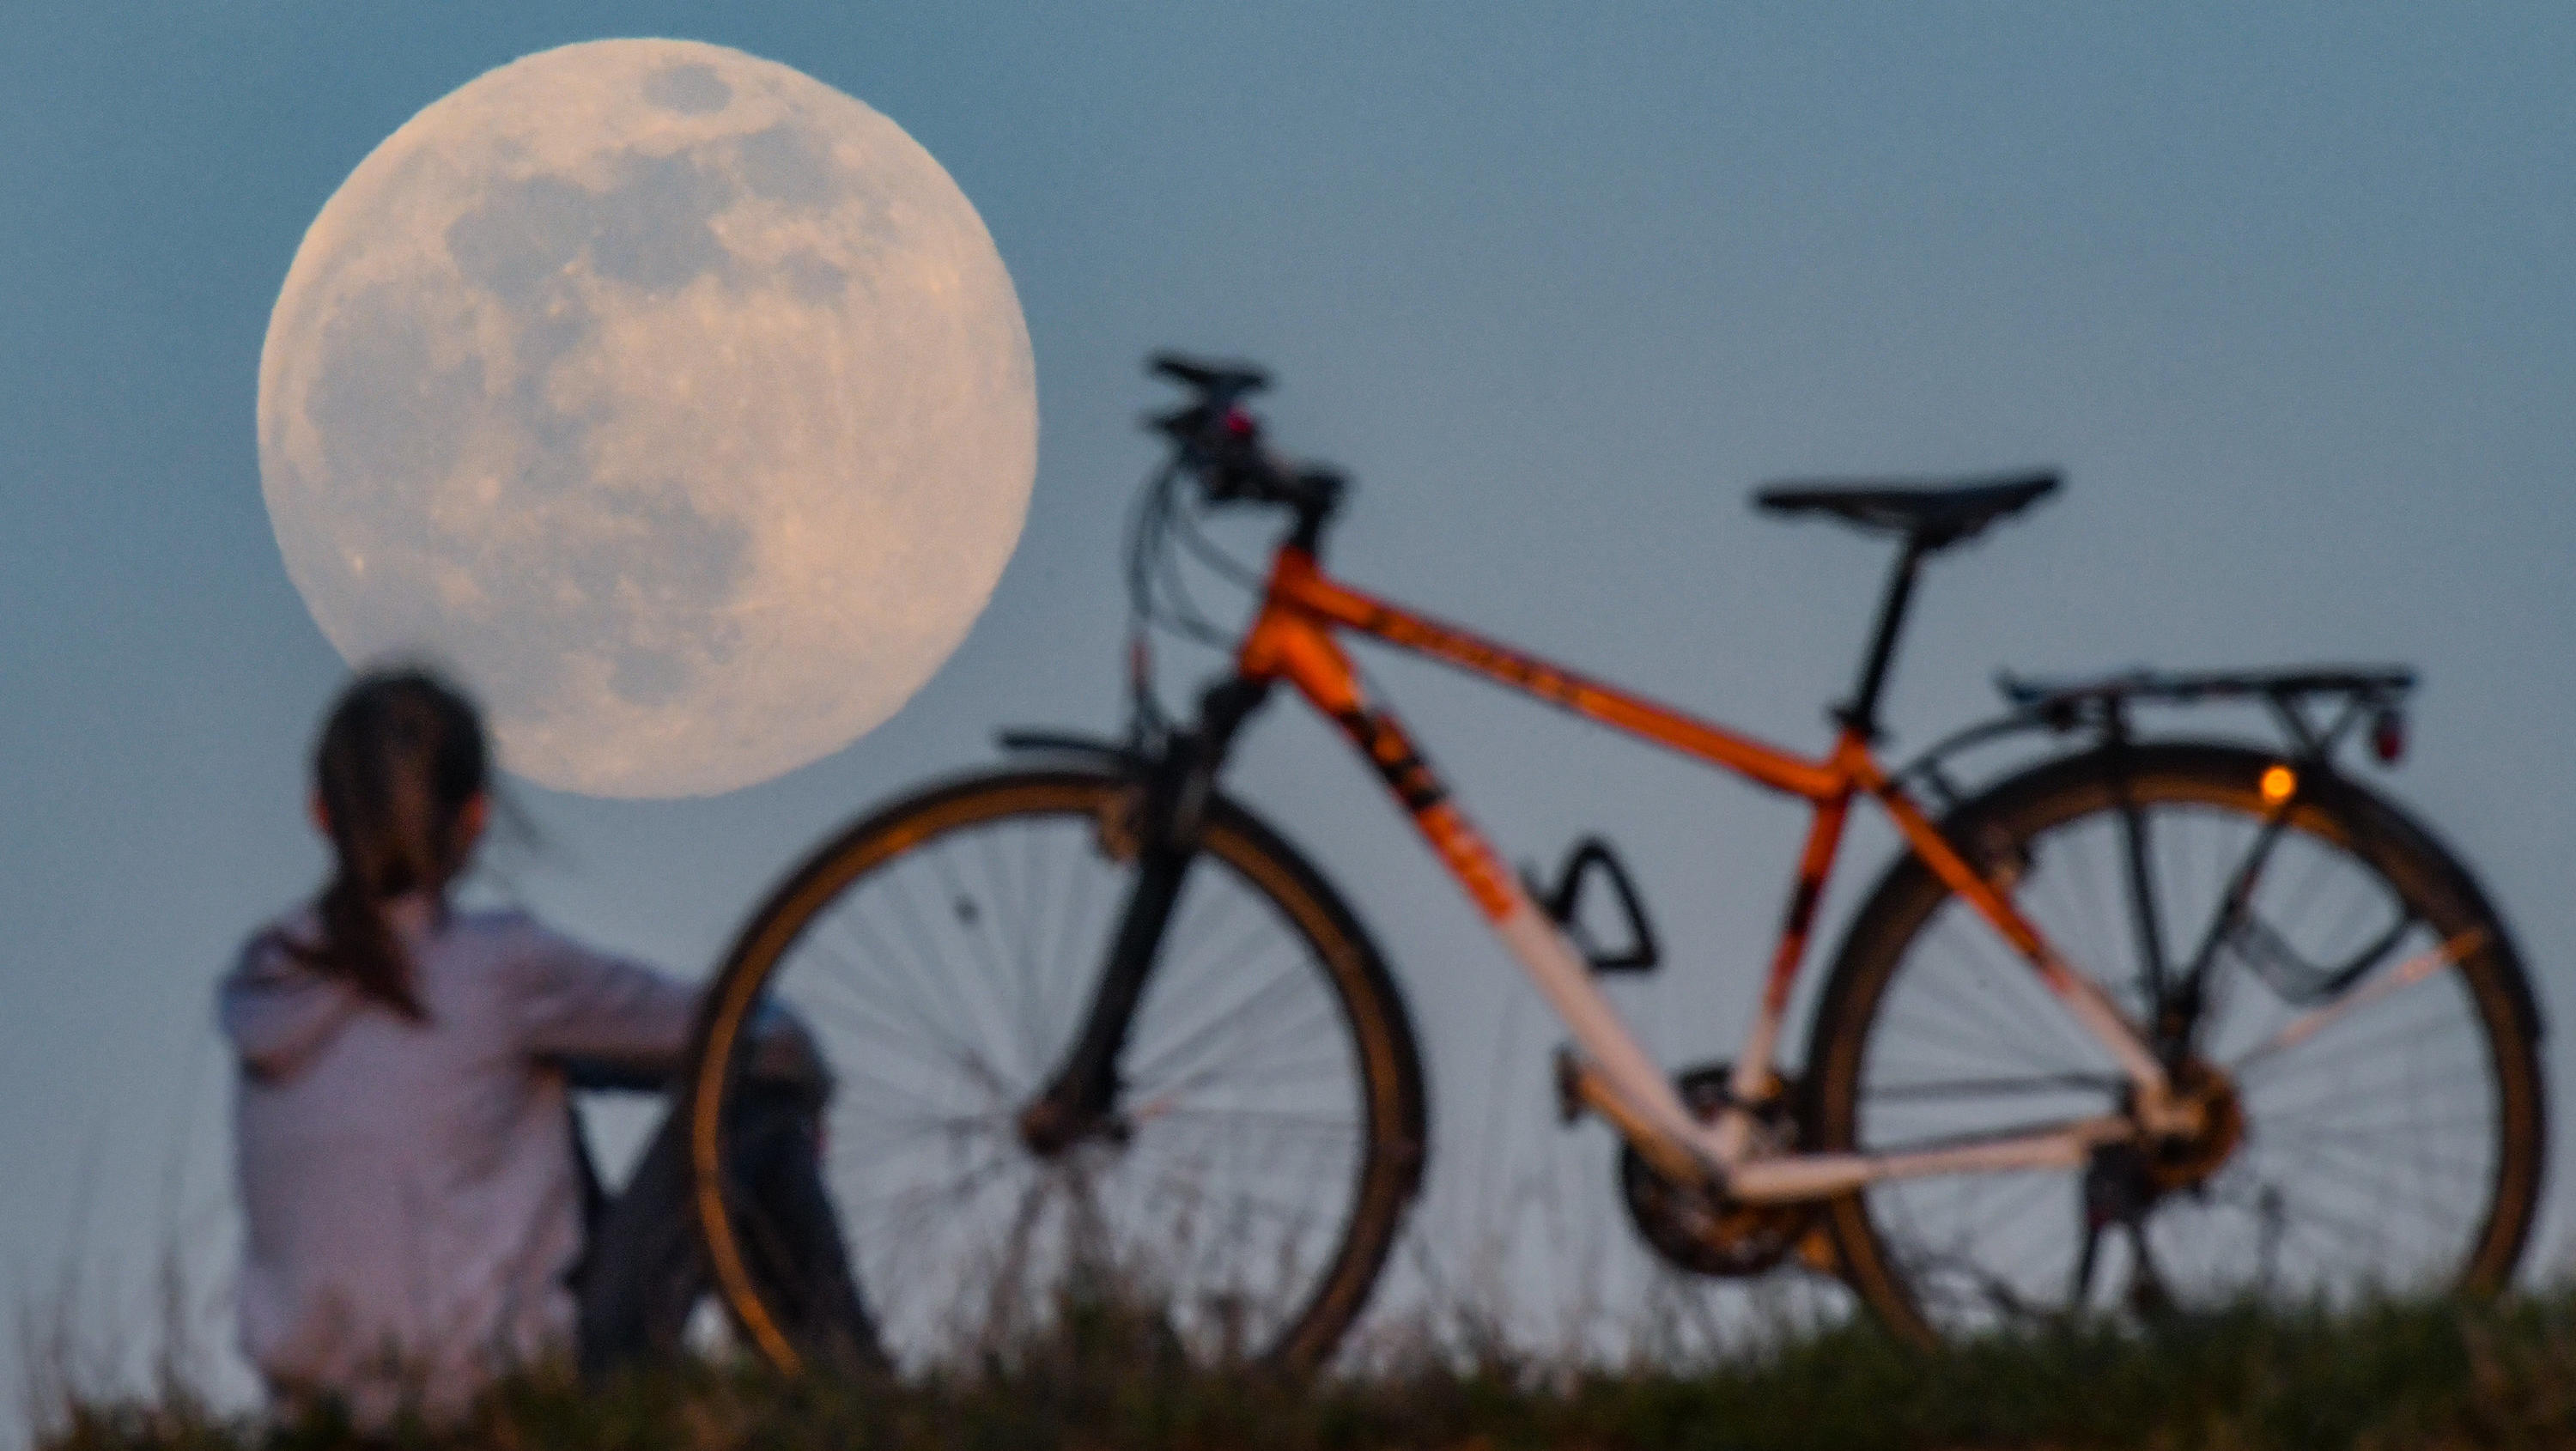 07.04.2020, Brandenburg, Sieversdorf: Der Mond geht als sogenannter Supermond auf, während auf einem Hügel ein Mädchen neben ihrem Fahrrad sitzt und das Schauspiel bewundert. Der Mond erreicht in der Nacht vom 07. auf den 08. April als Vollmond sein 